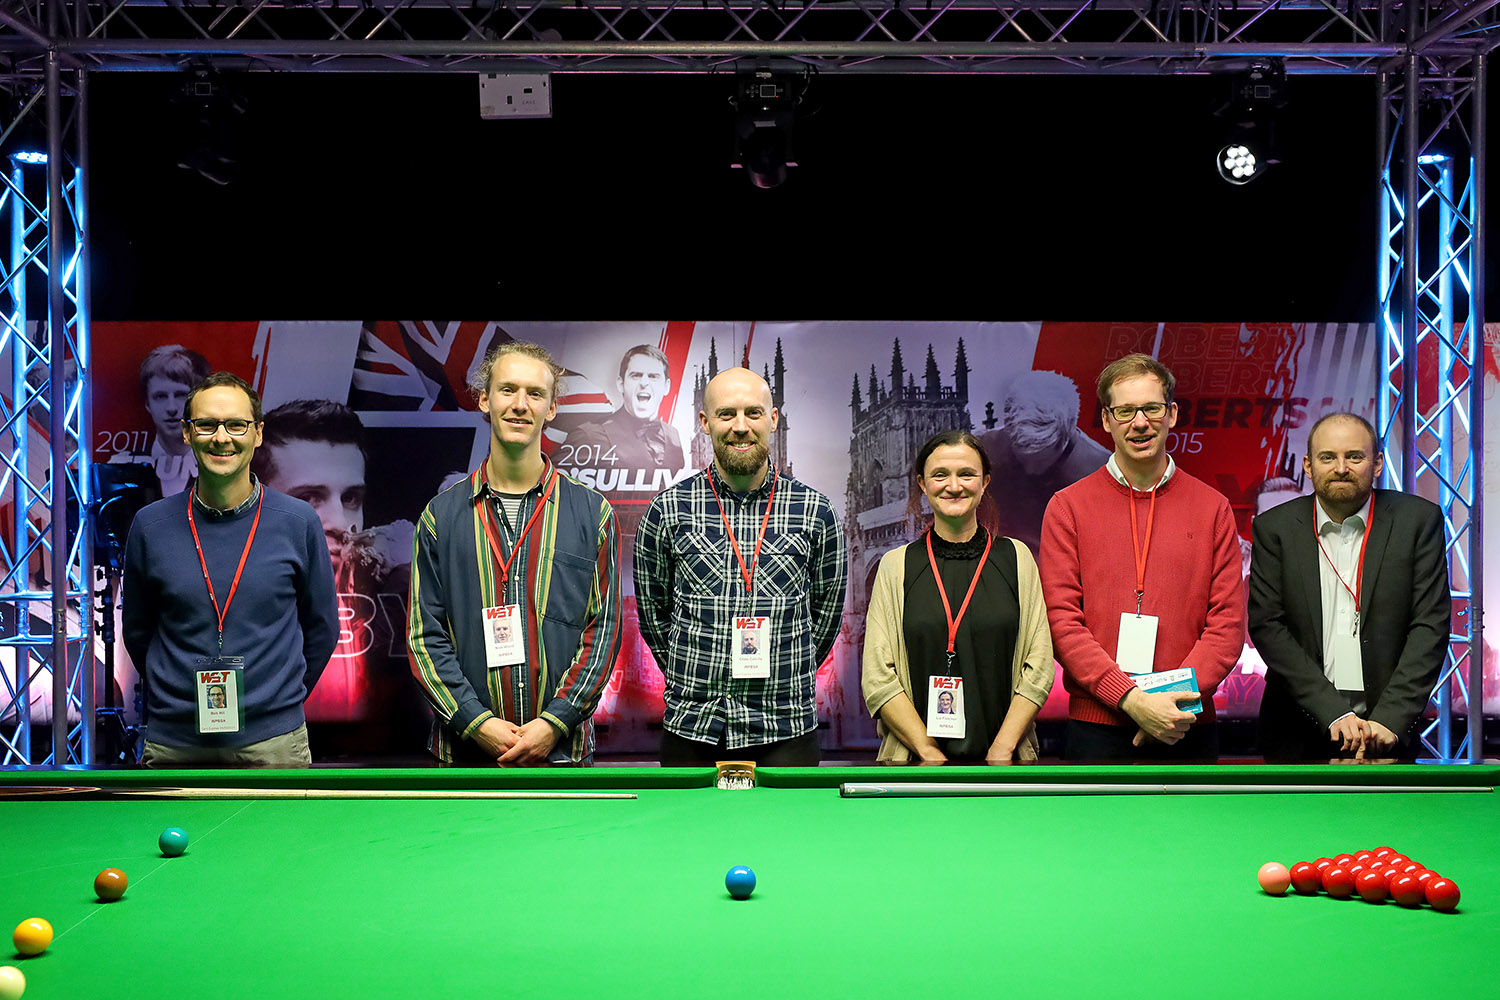 Group photo at UK Championship